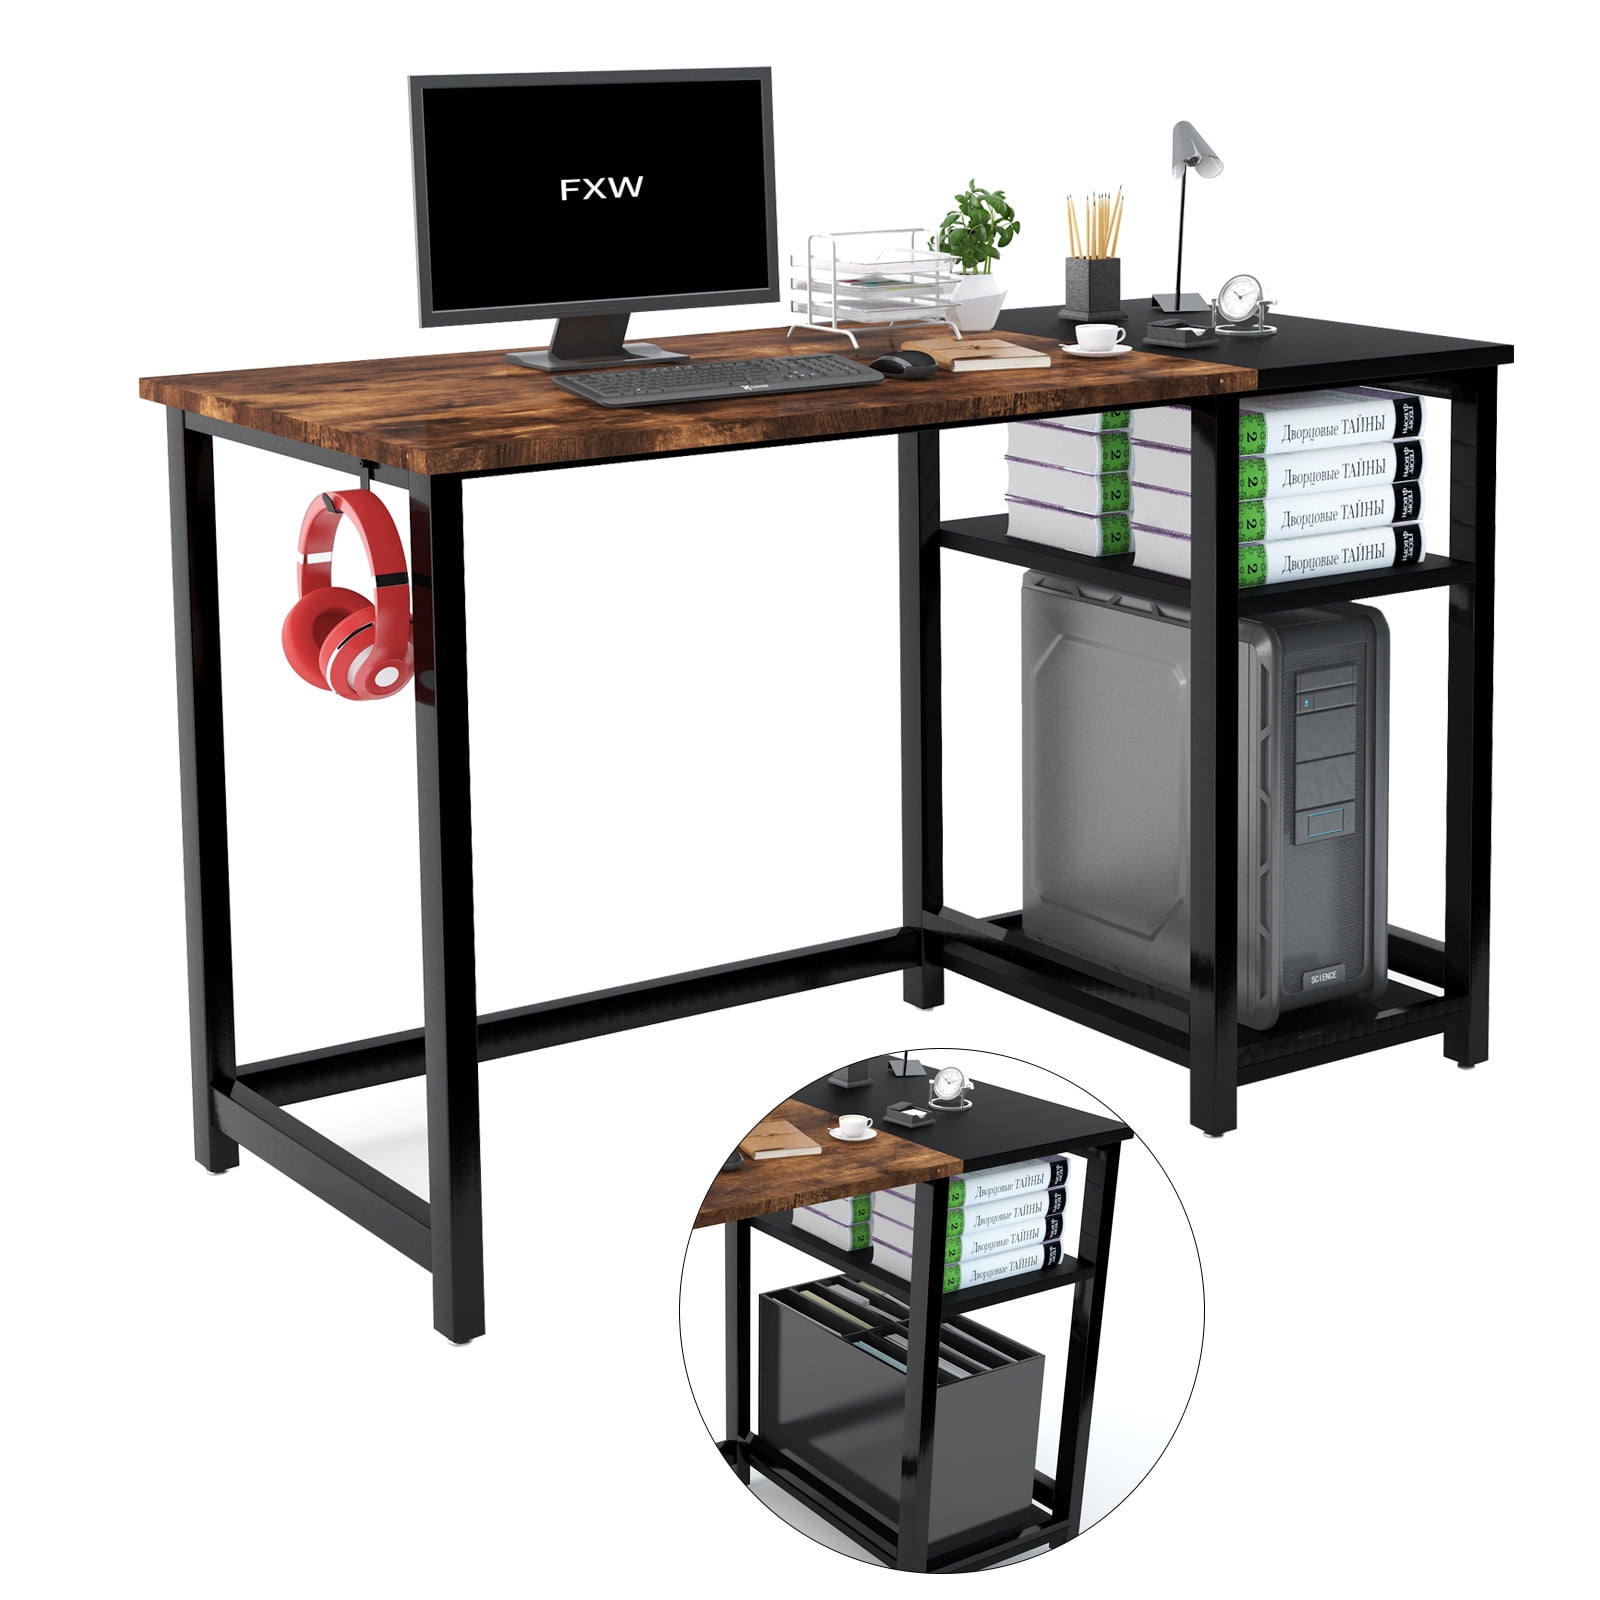 Details about   Computer Table Workstation Metal Black Desk Home Office Study Work Station Shelf